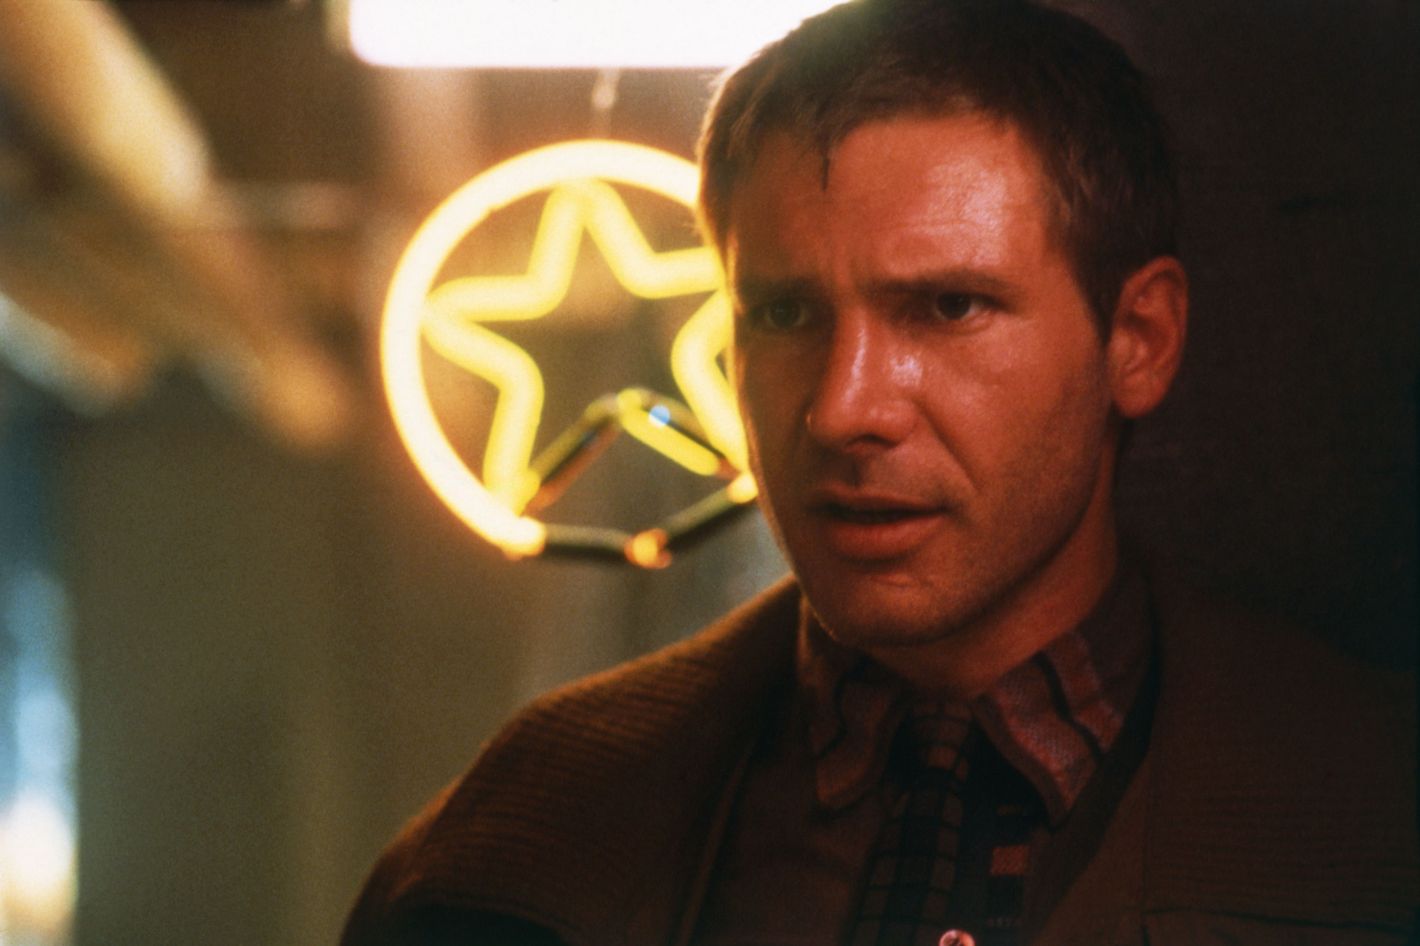 Blade Runner 2049 (Film) - TV Tropes